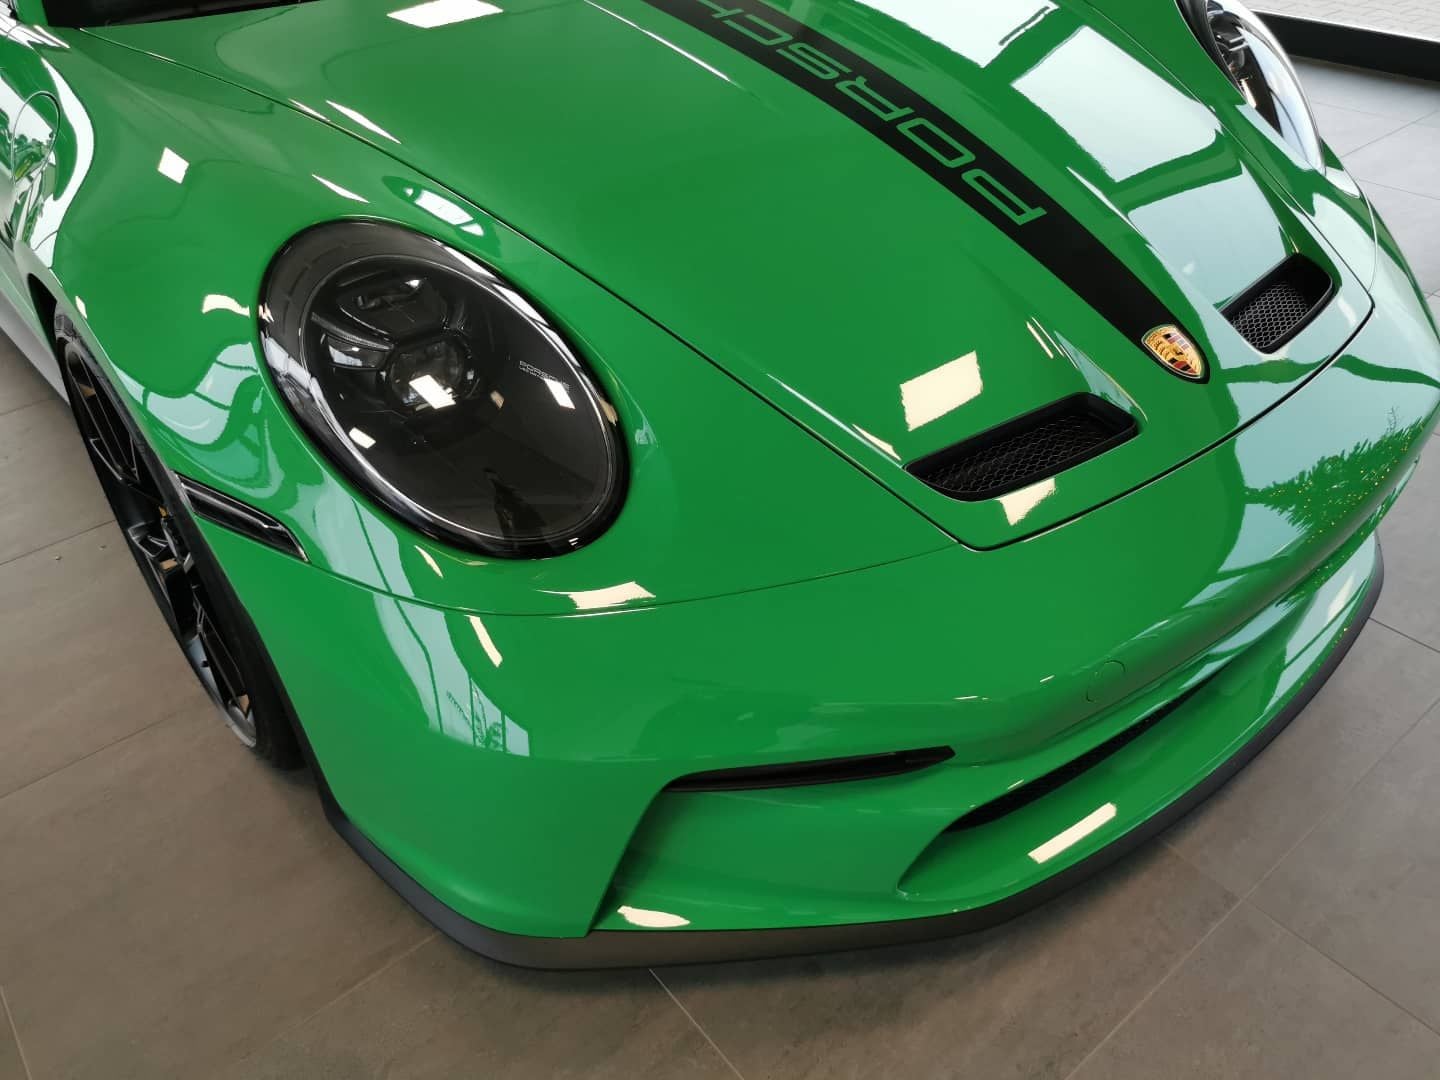 Python Green builds - Rennlist - Porsche Discussion Forums